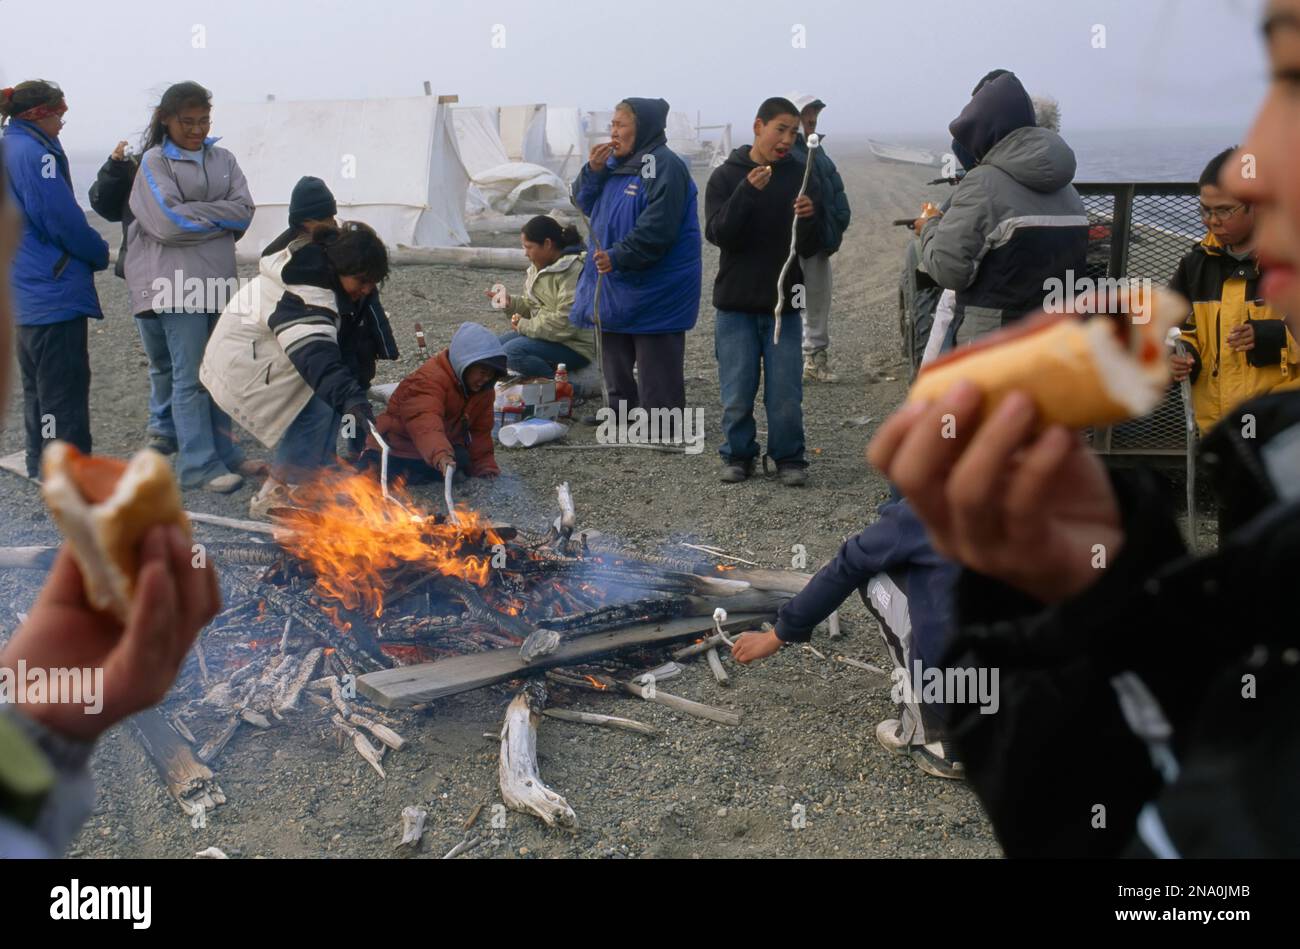 Inuit campement cuisine et mange à l'extérieur, North Slope Area, Alaska, USA ; North Slope, Alaska, États-Unis d'Amérique Banque D'Images